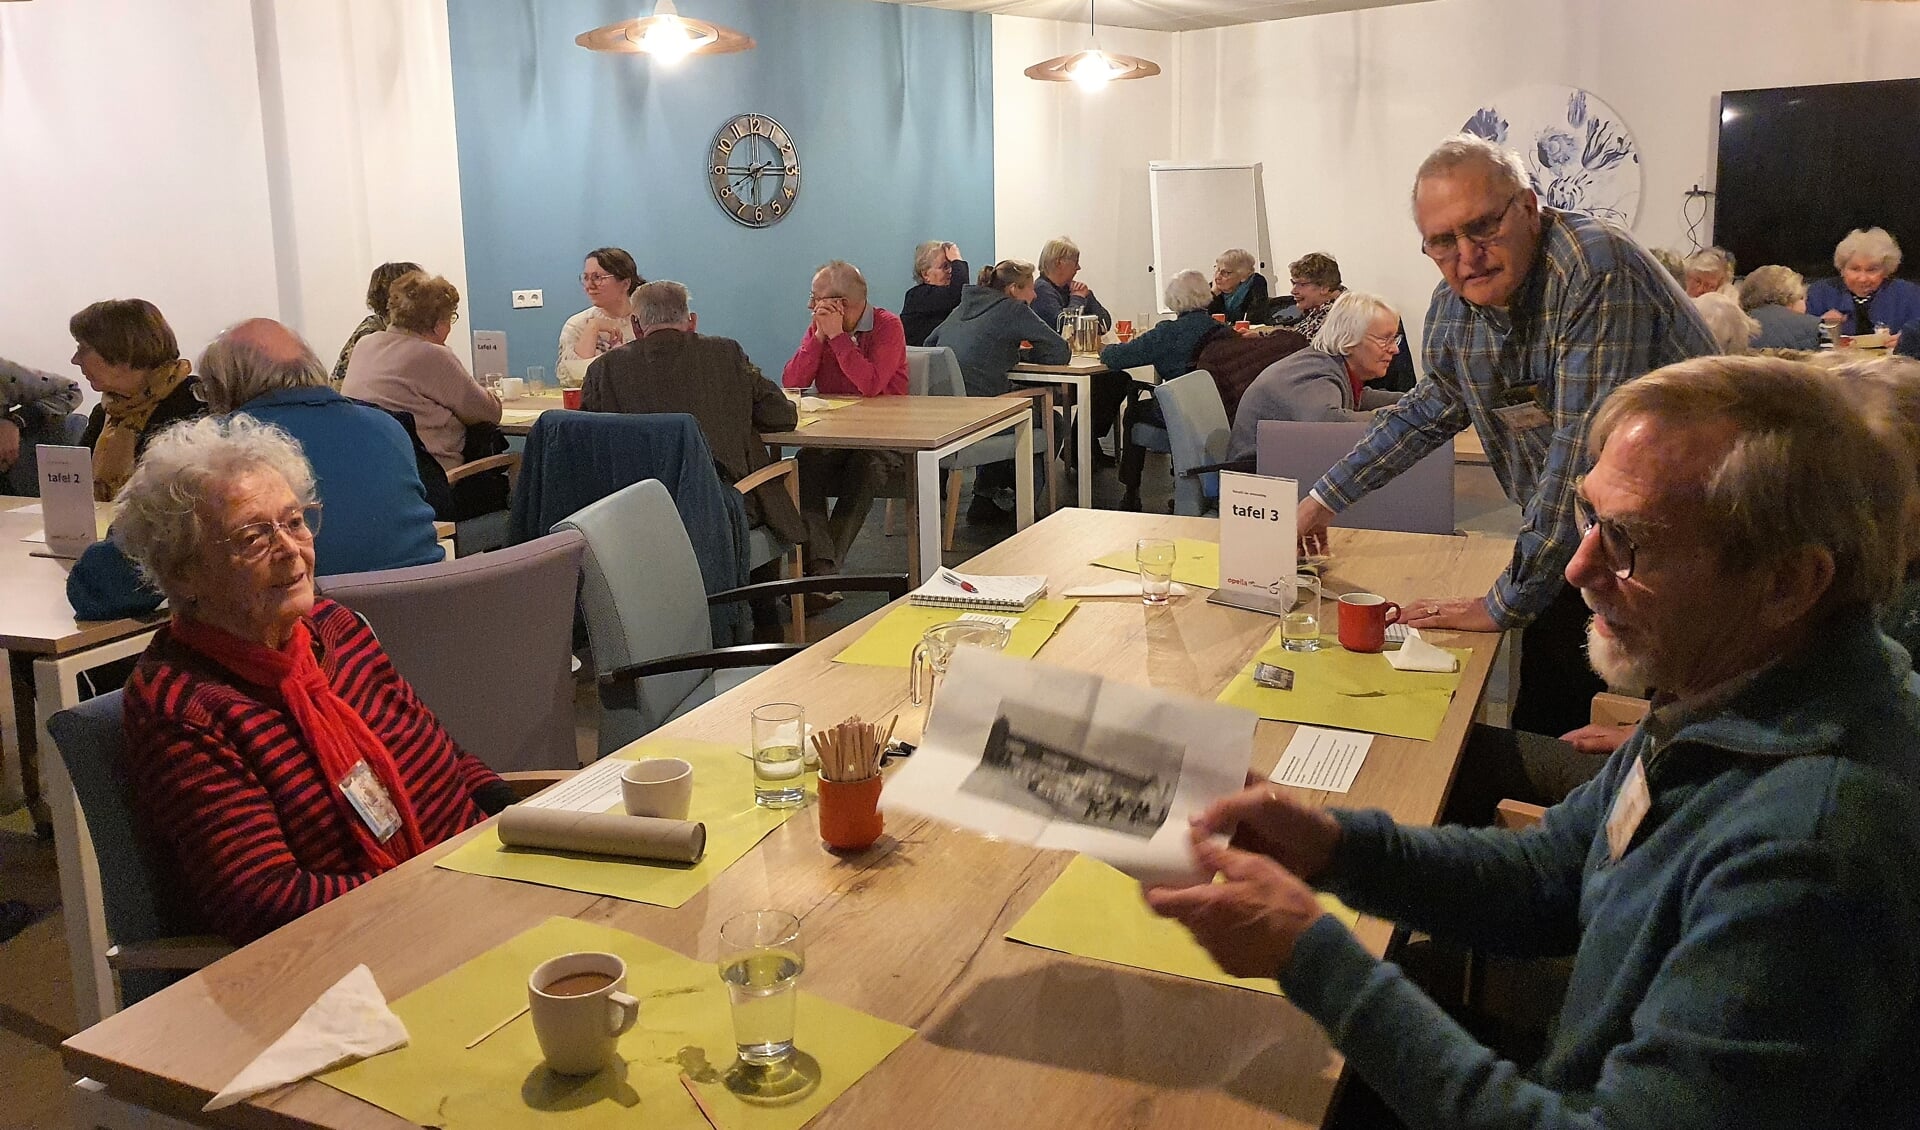 In het Eetcafé van Ontmoeting worden er door ruim 30 ouderen mooie jeugdherinneringen aan hun oude straat opgehaald.